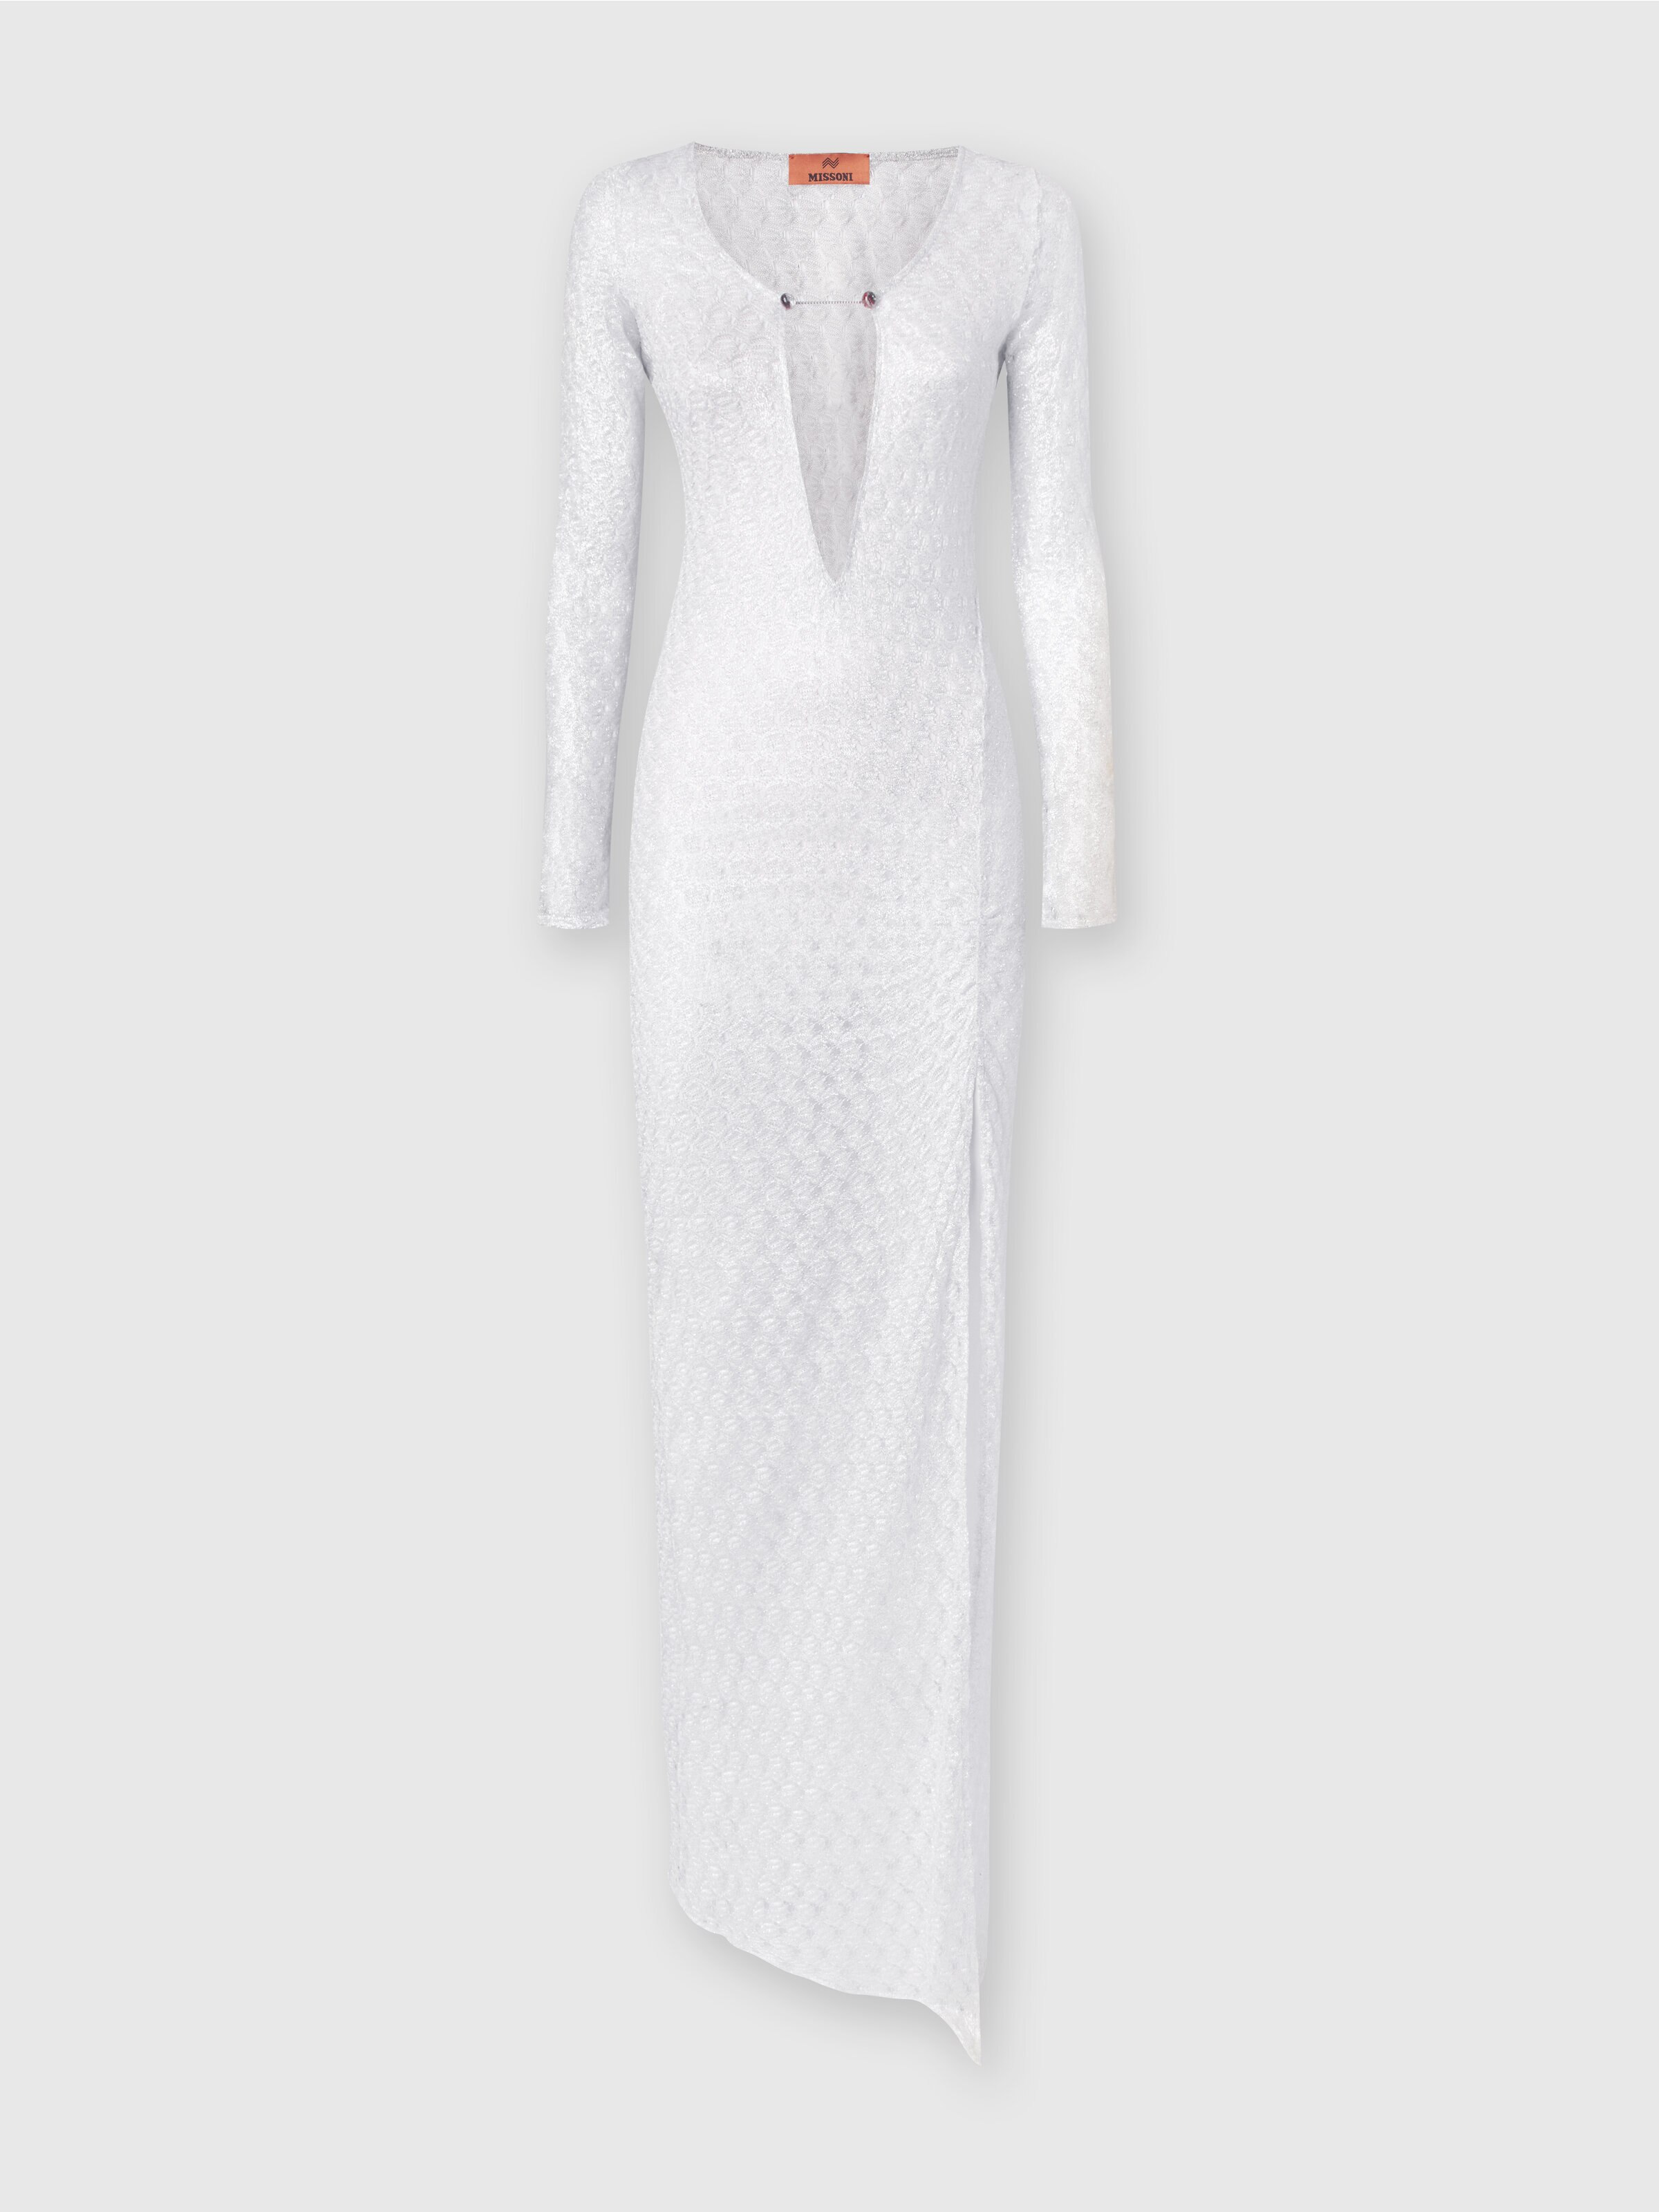 Langes Kleid in Spitzenoptik mit V-Ausschnitt und Applikationen, Weiß  - 0